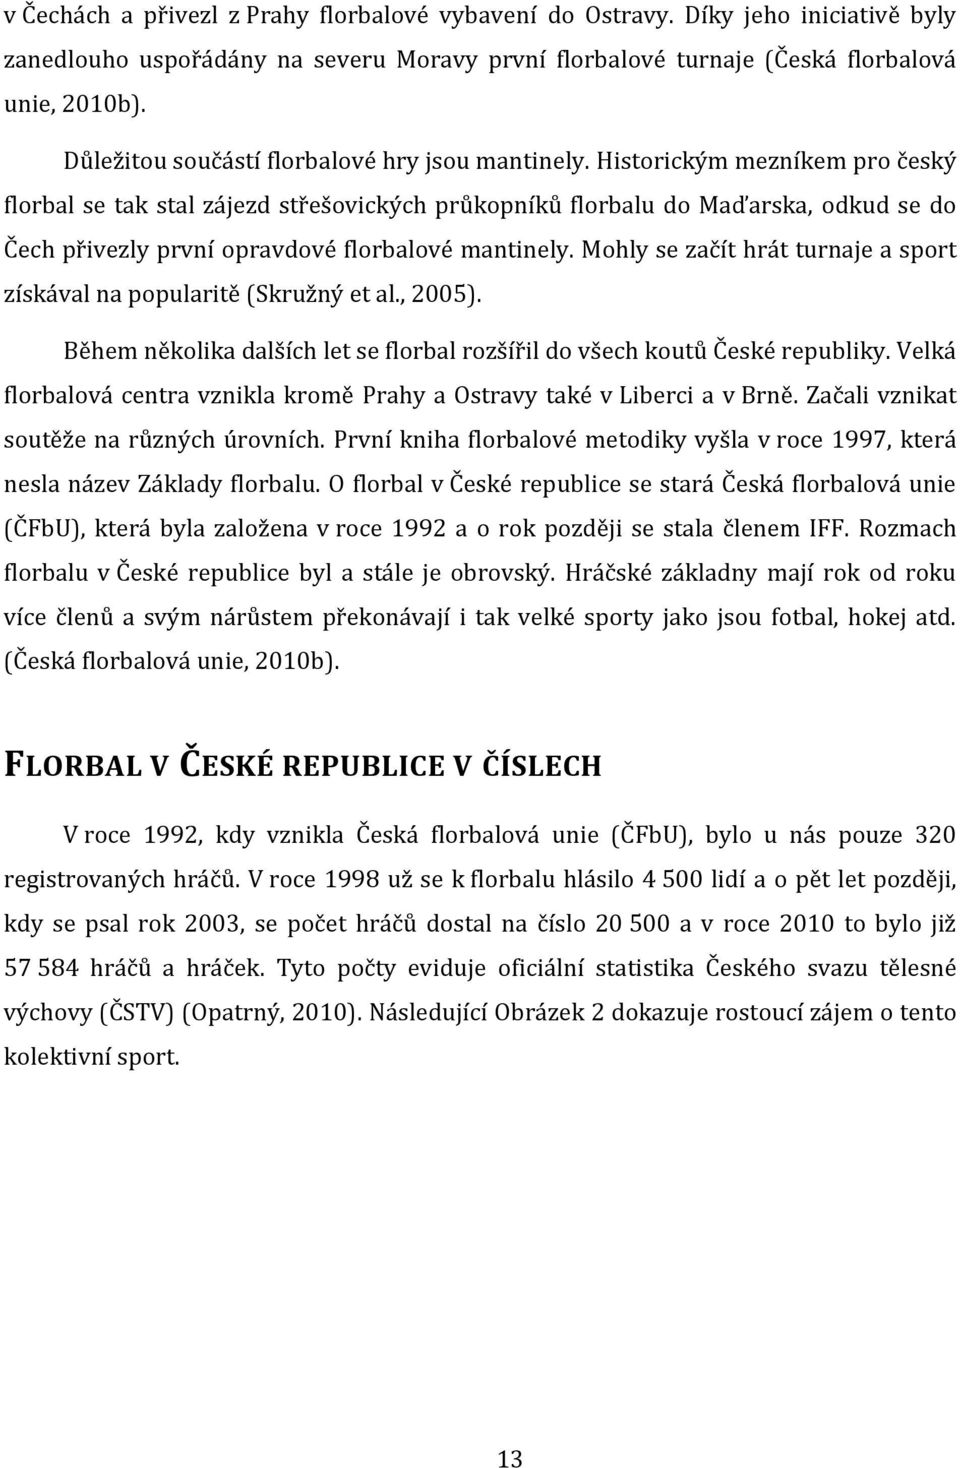 Historickým mezníkem pro český florbal se tak stal zájezd střešovických průkopníků florbalu do Maďarska, odkud se do Čech přivezly první opravdové florbalové mantinely.